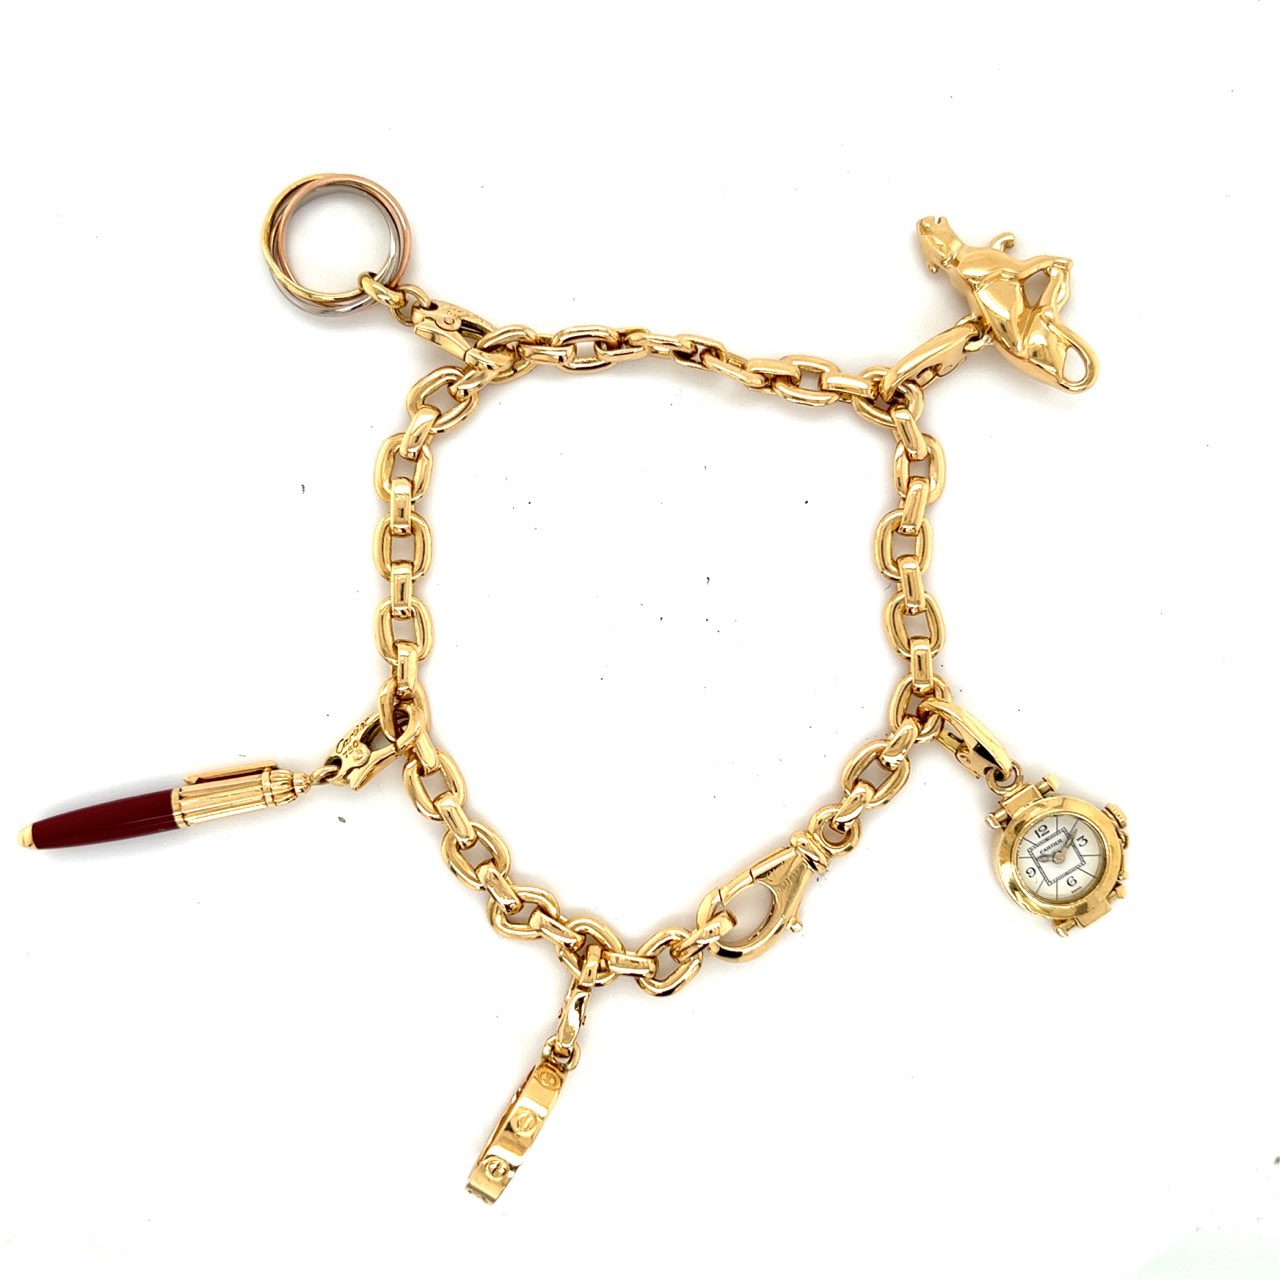 Charm Bracelets vs Charm Necklaces